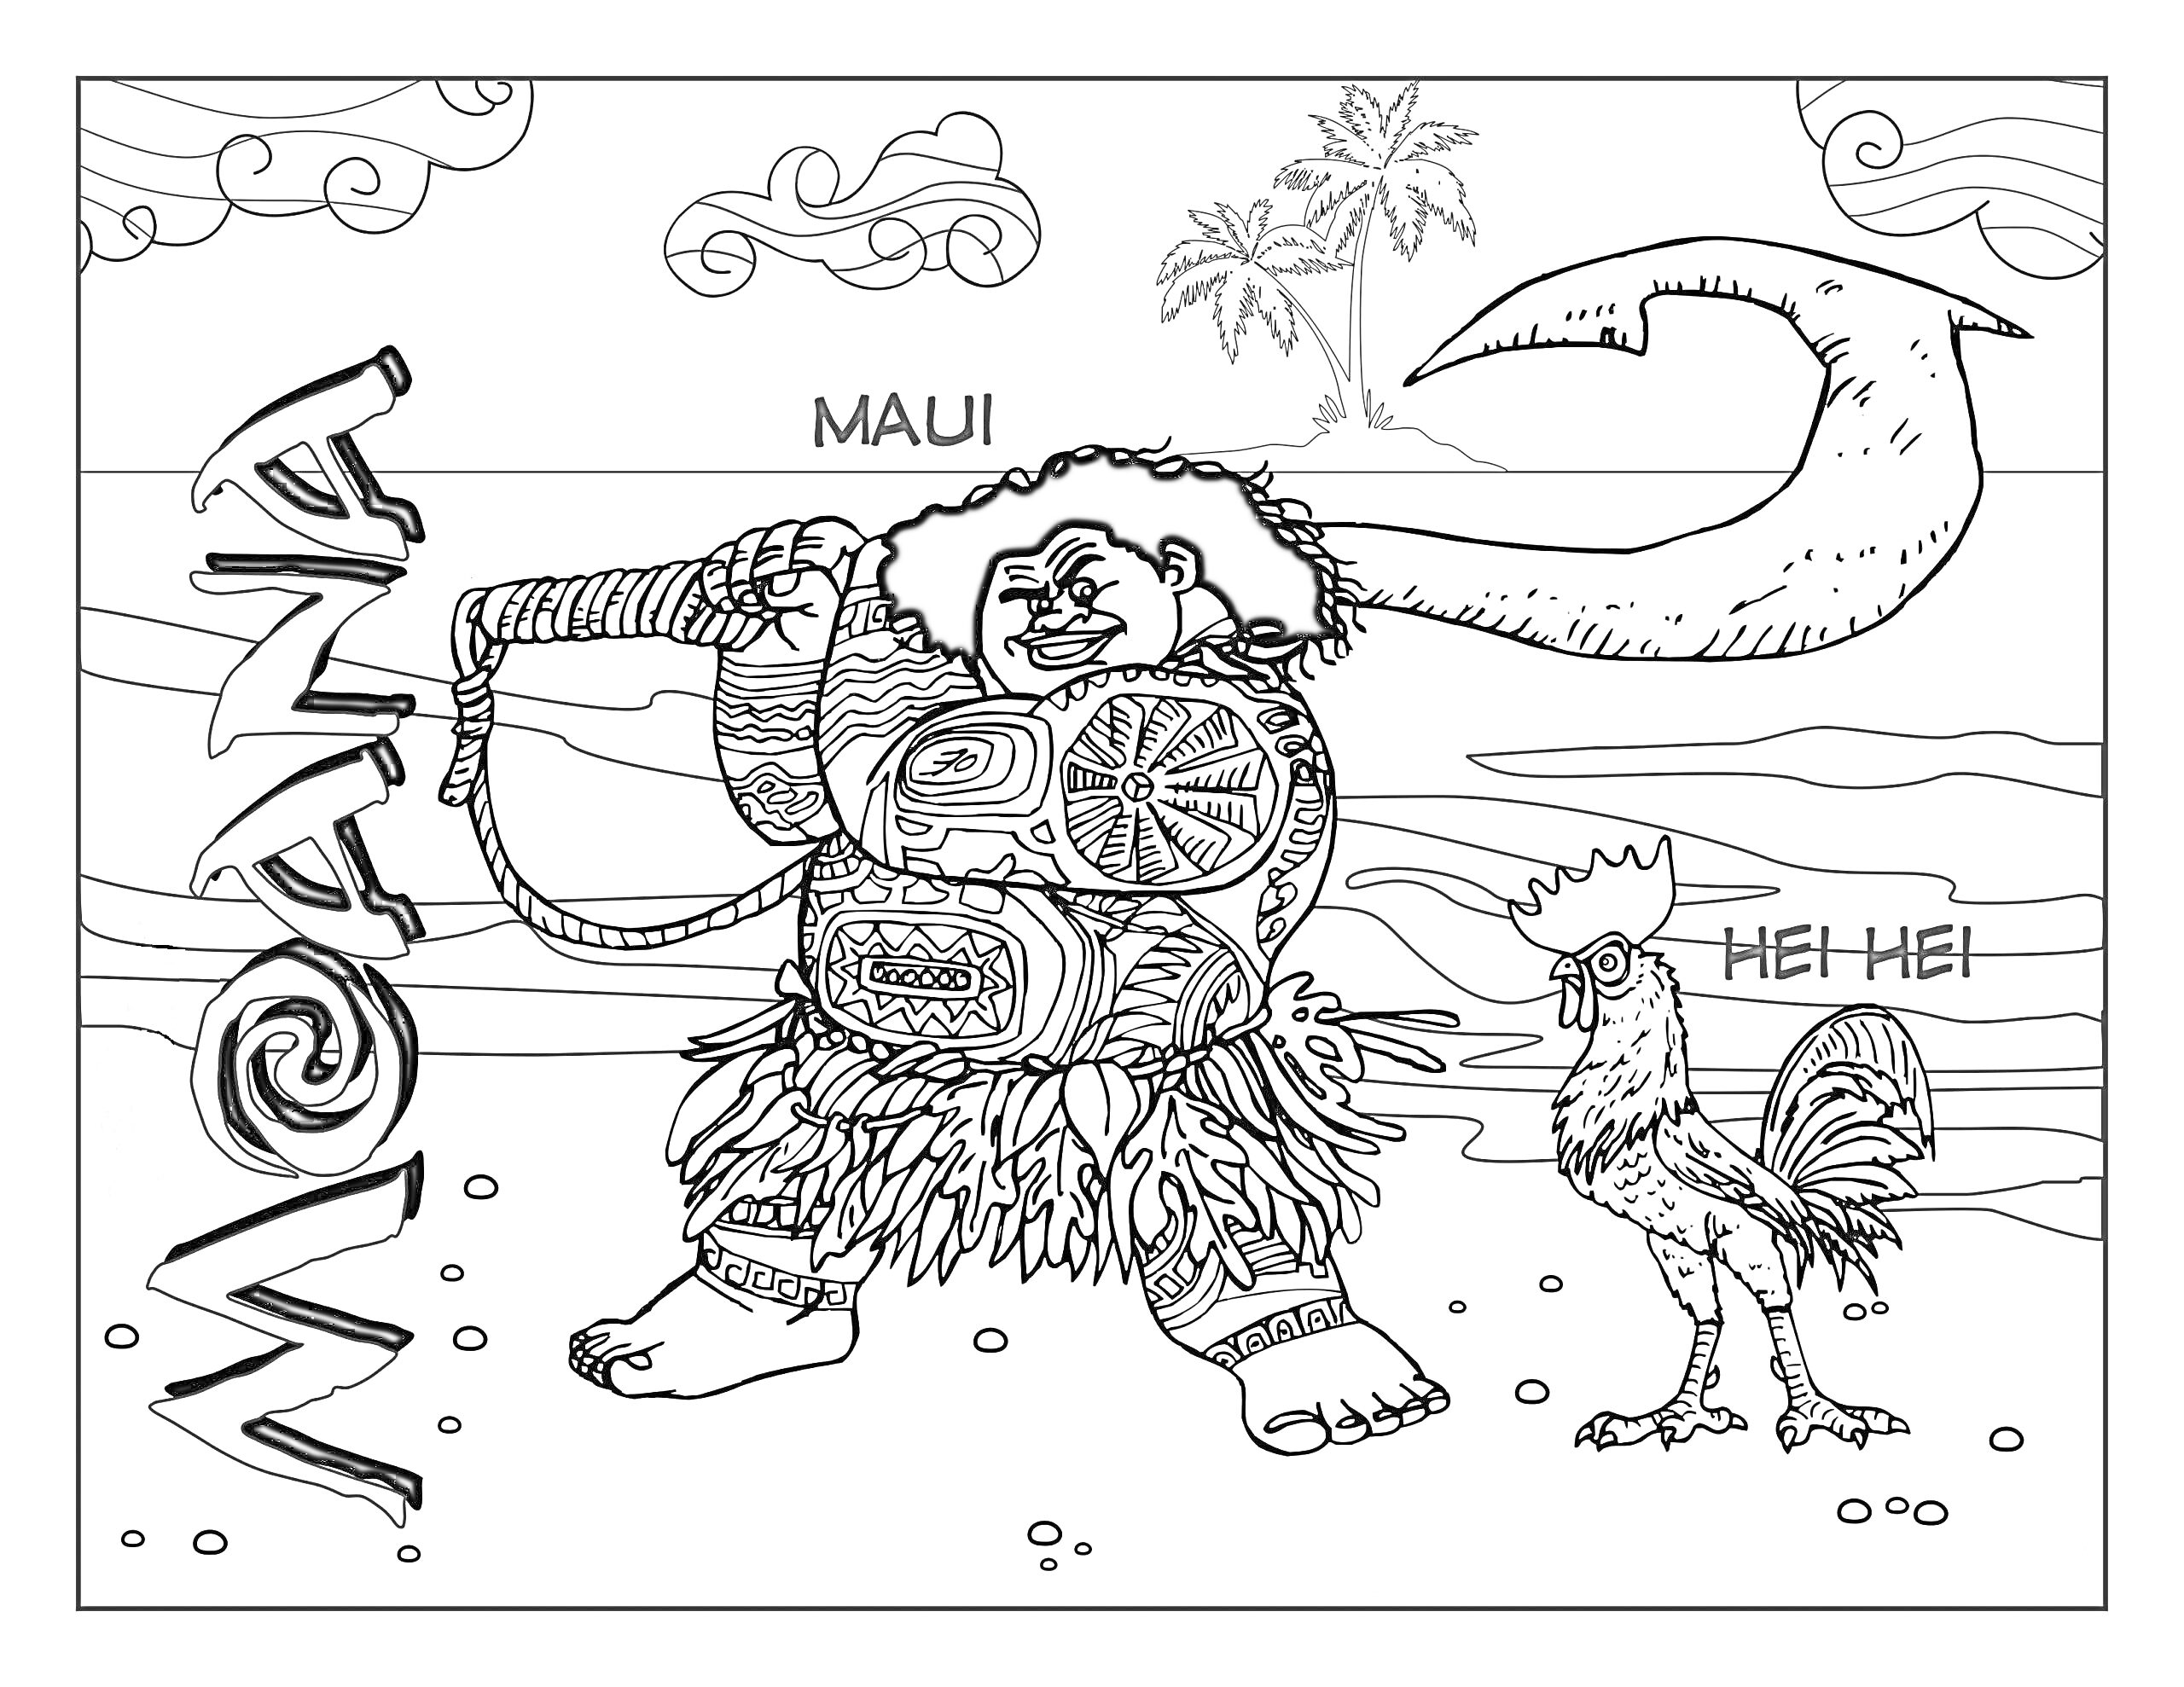 Мауи с волшебным крюком и петух Хей-Хей на пляже